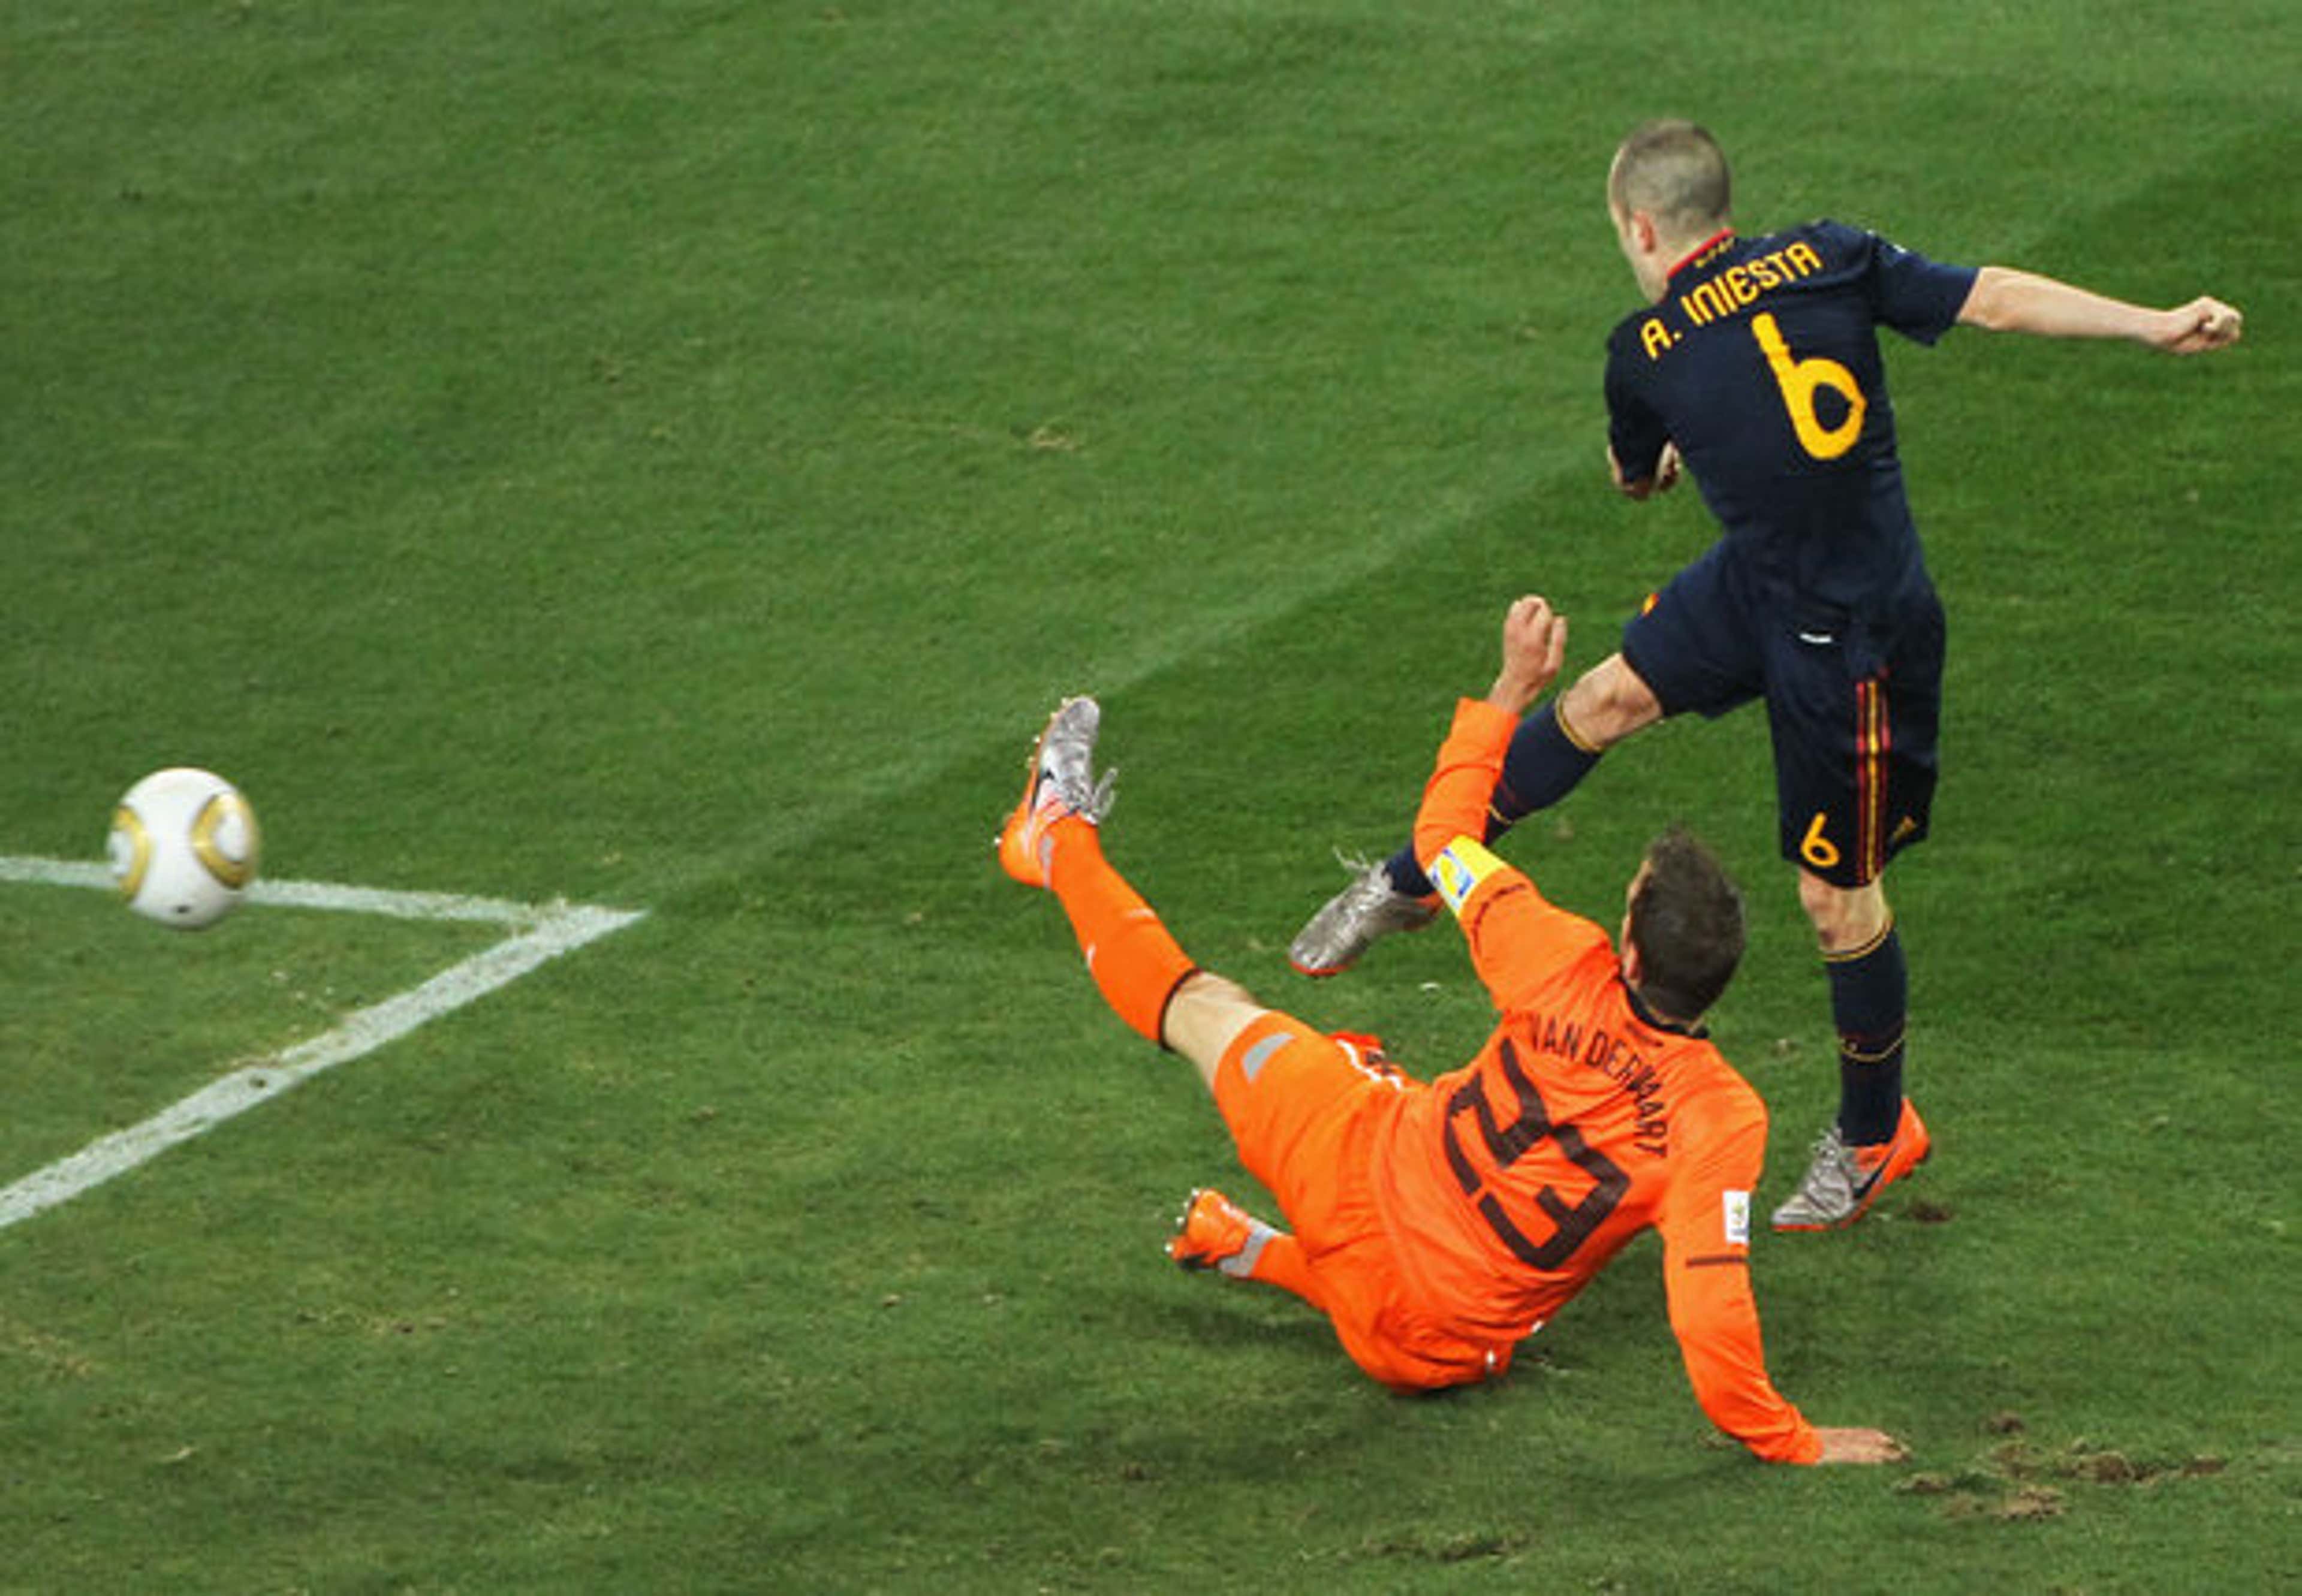 Decisão tensa entre Holanda e Espanha durante Copa do Mundo da